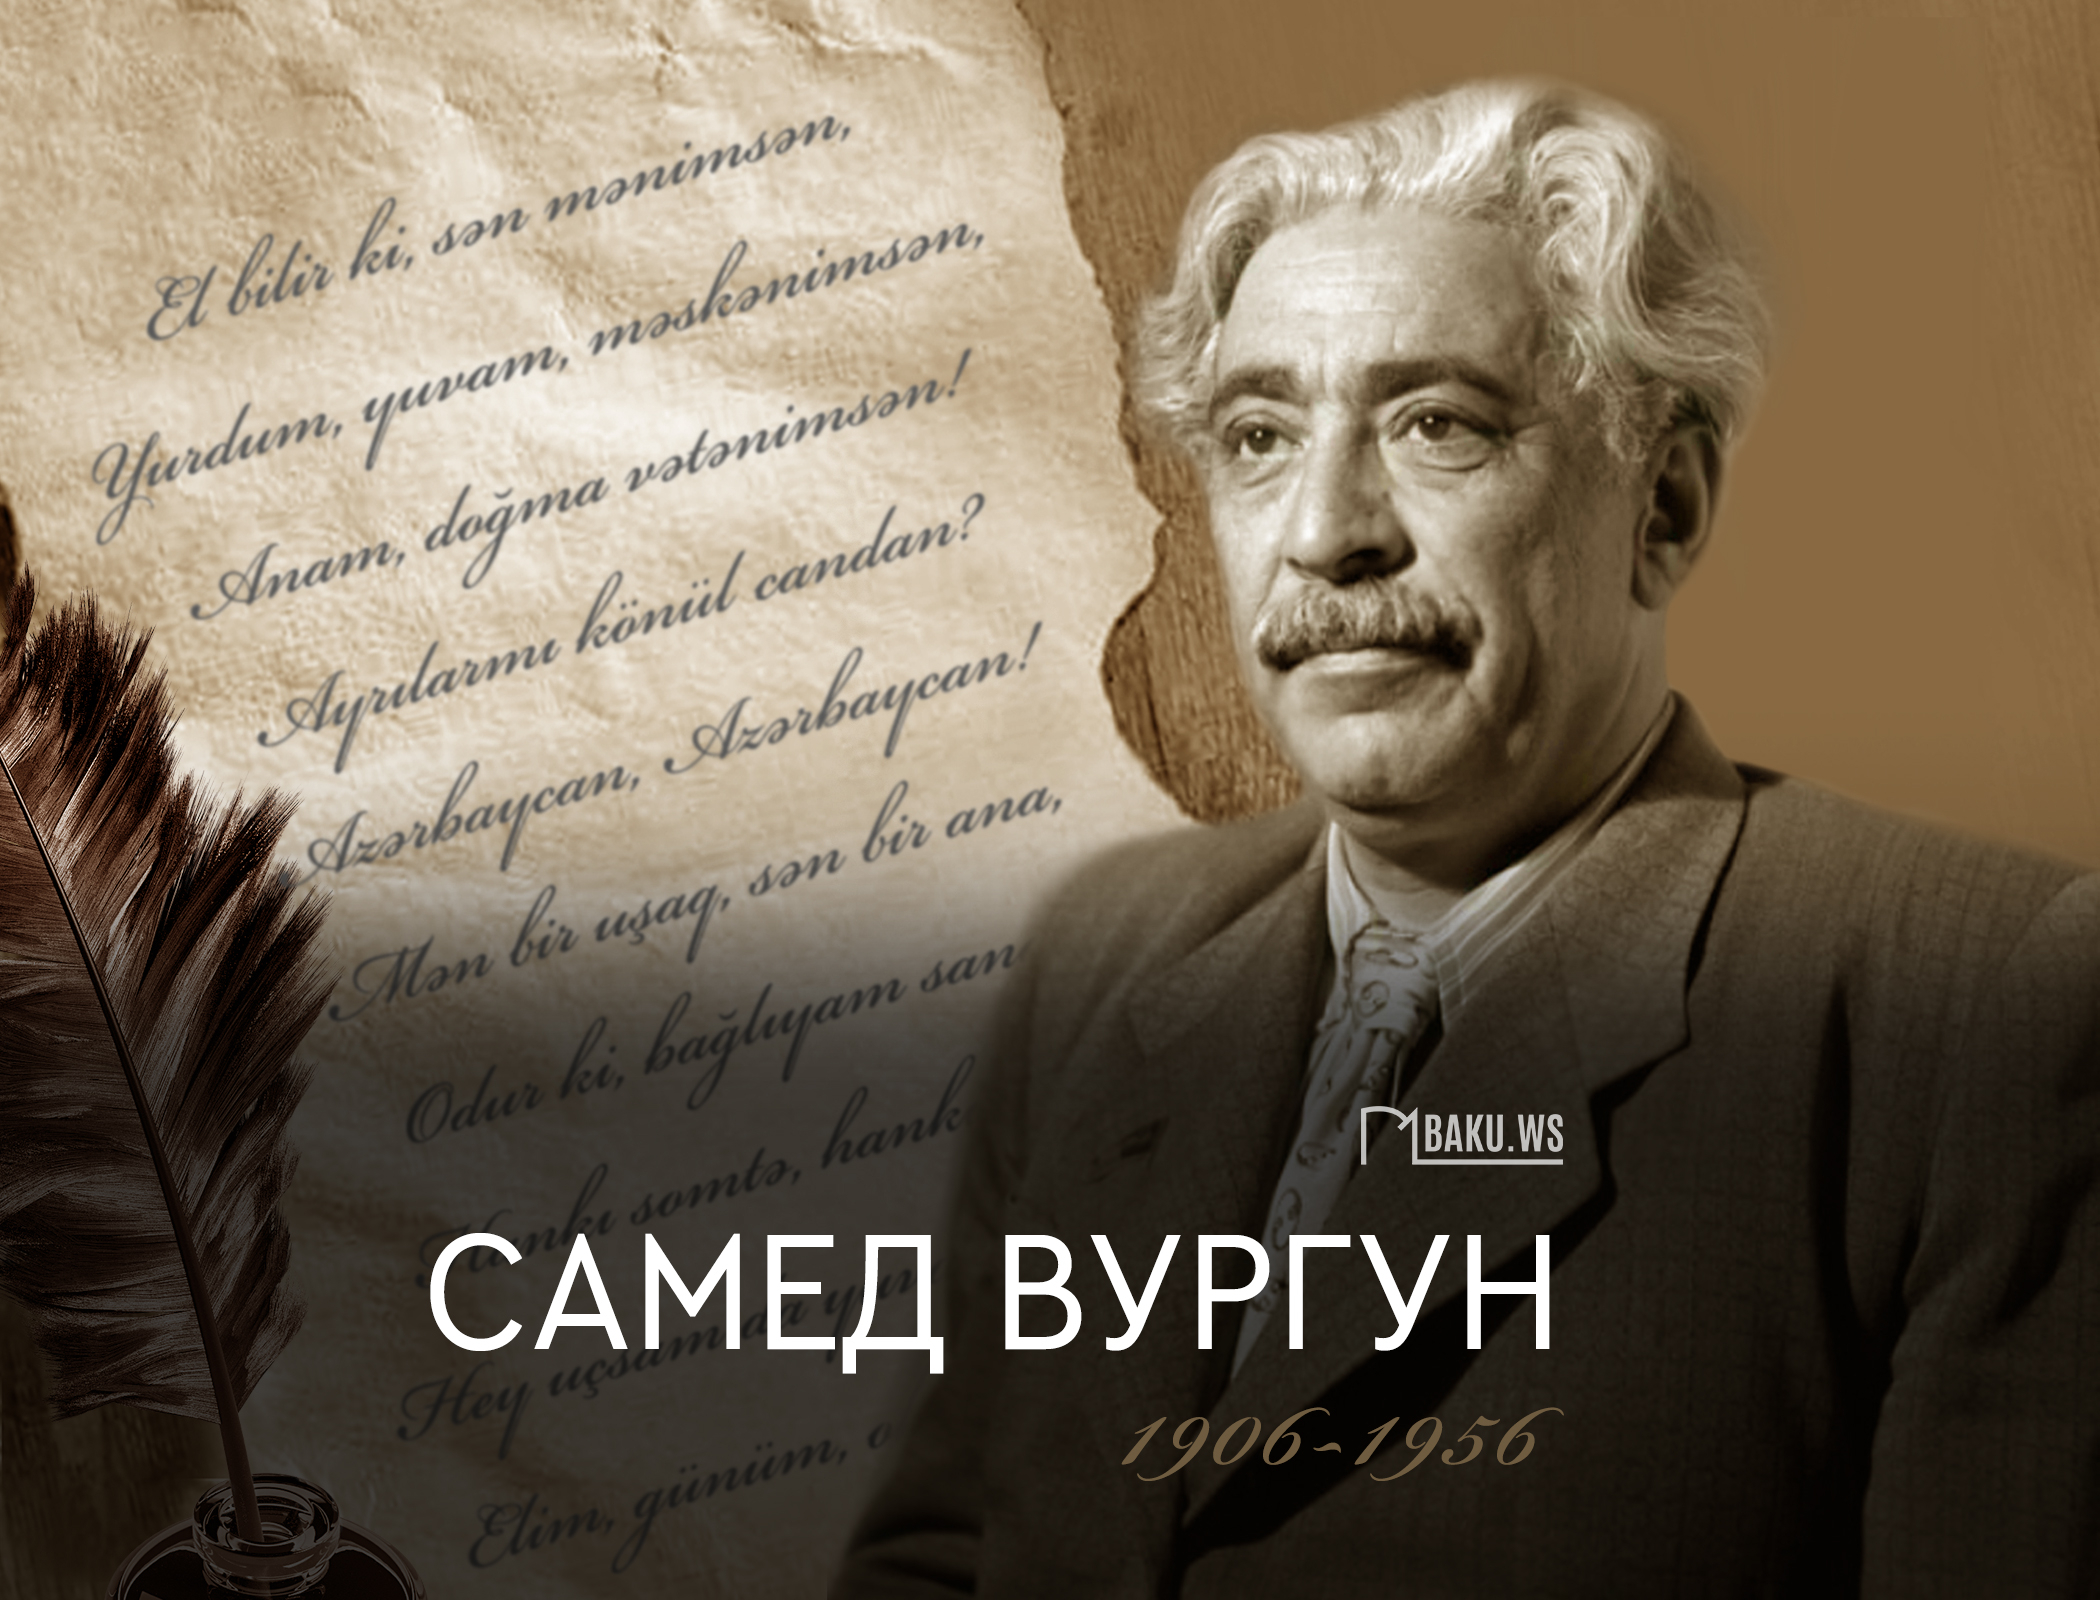 Сегодня день рождения выдающегося азербайджанского поэта Самеда Вургуна